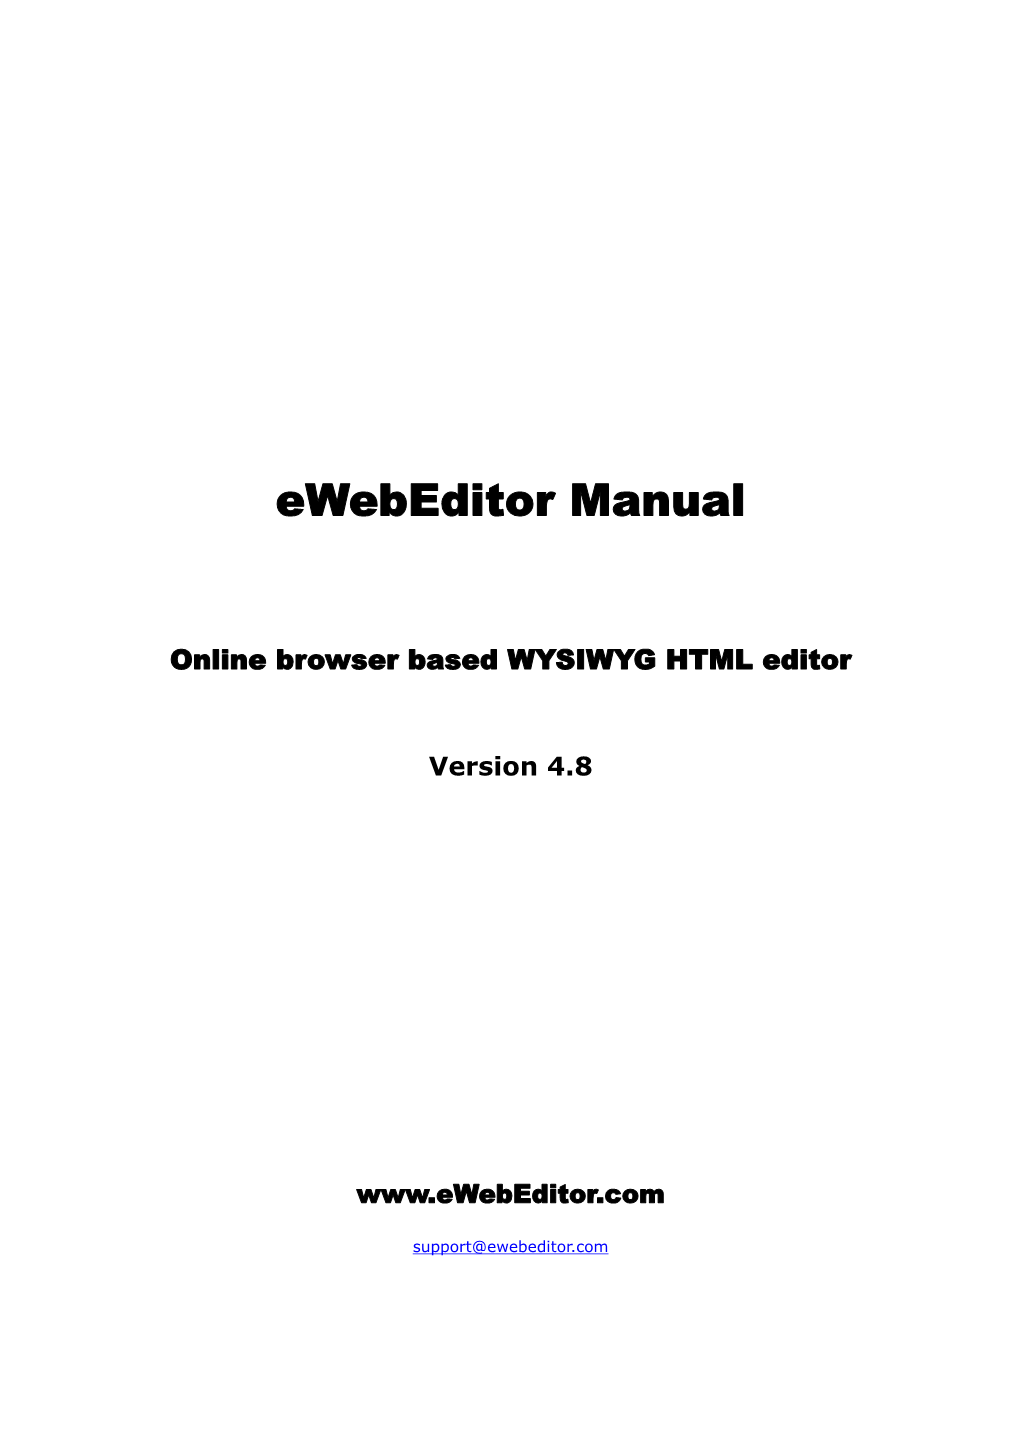 Ewebeditor Manual